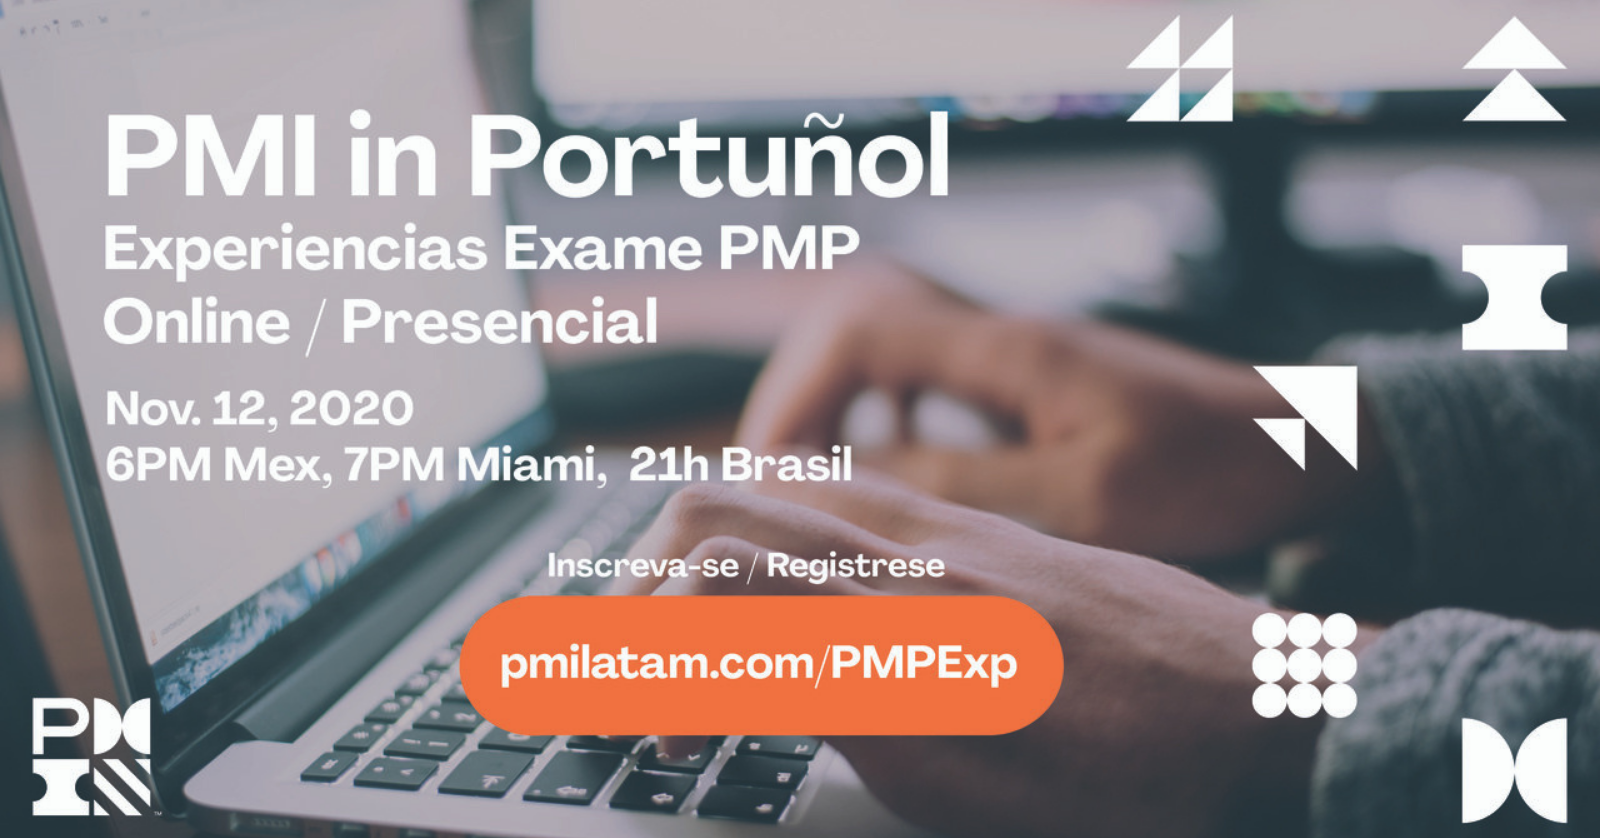 Você está visualizando atualmente PMI em Portuñol: Experiencias do Exame PMP Online e Presencial